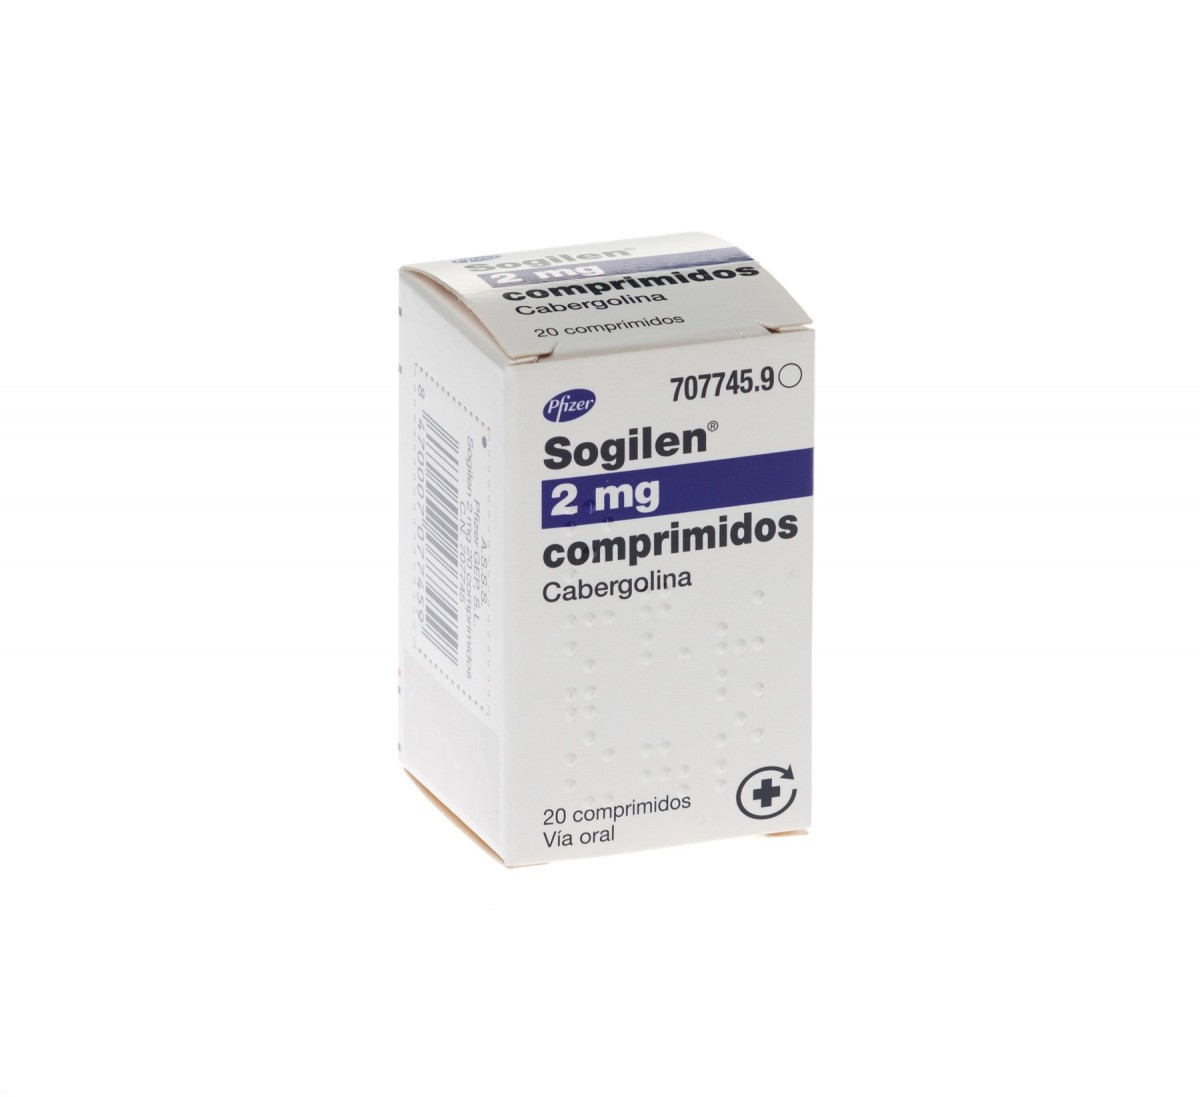 SOGILEN  2 mg COMPRIMIDOS,20 comprimidos fotografía del envase.